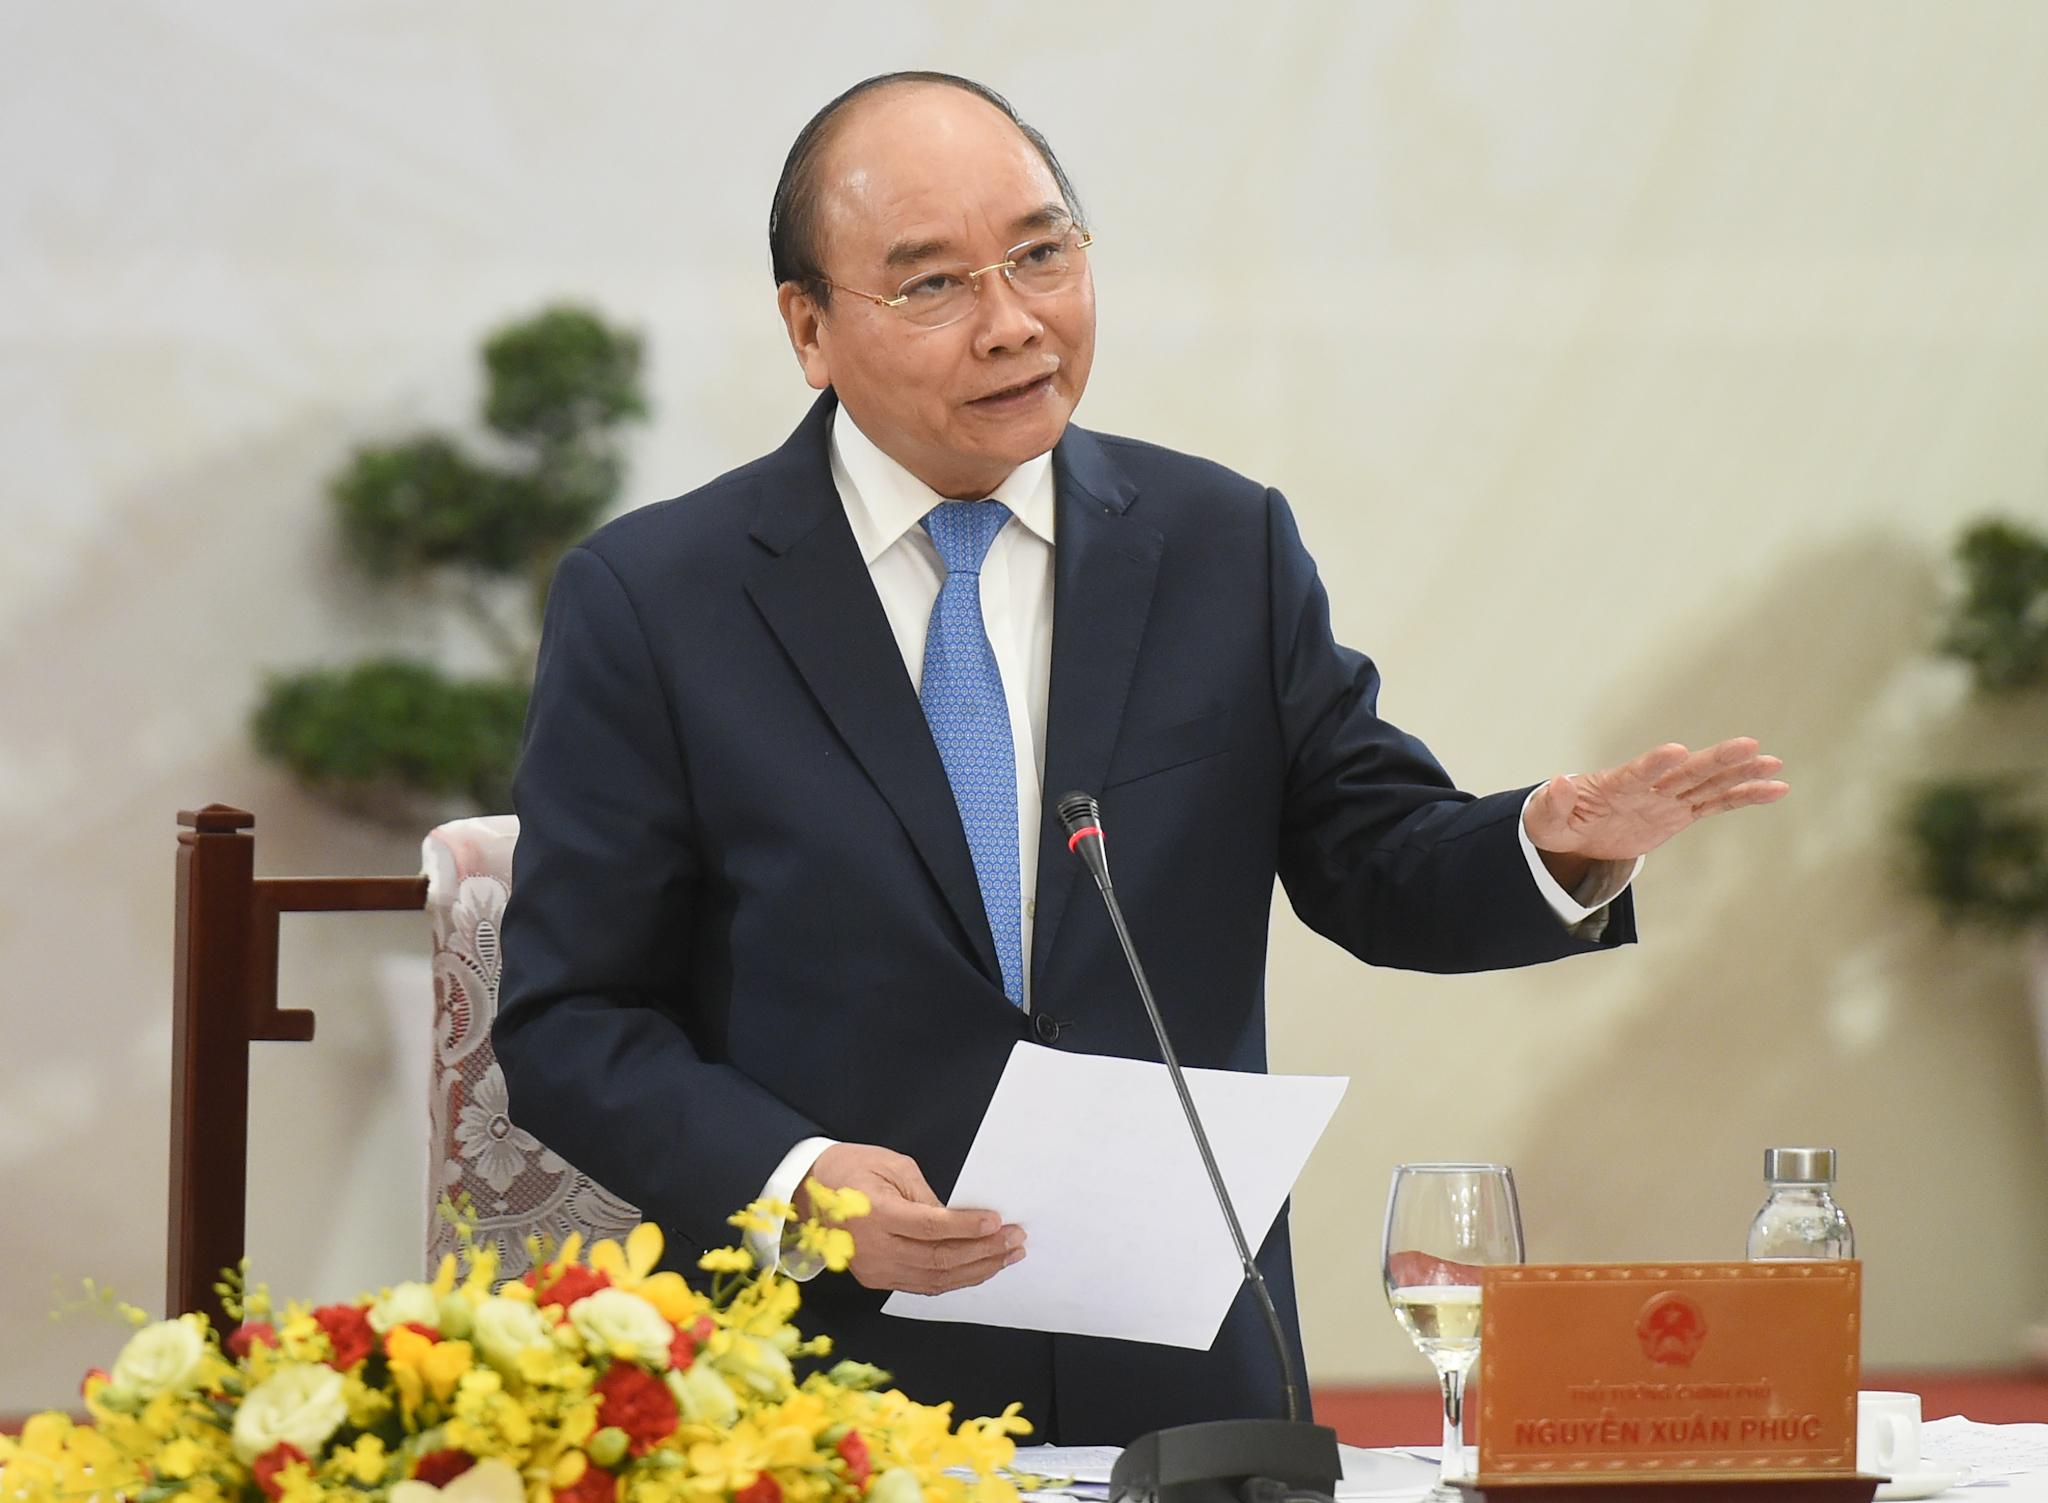 Thủ tướng: Đến 2045, sẽ xuất hiện các tập đoàn khổng lồ mang tên Việt Nam